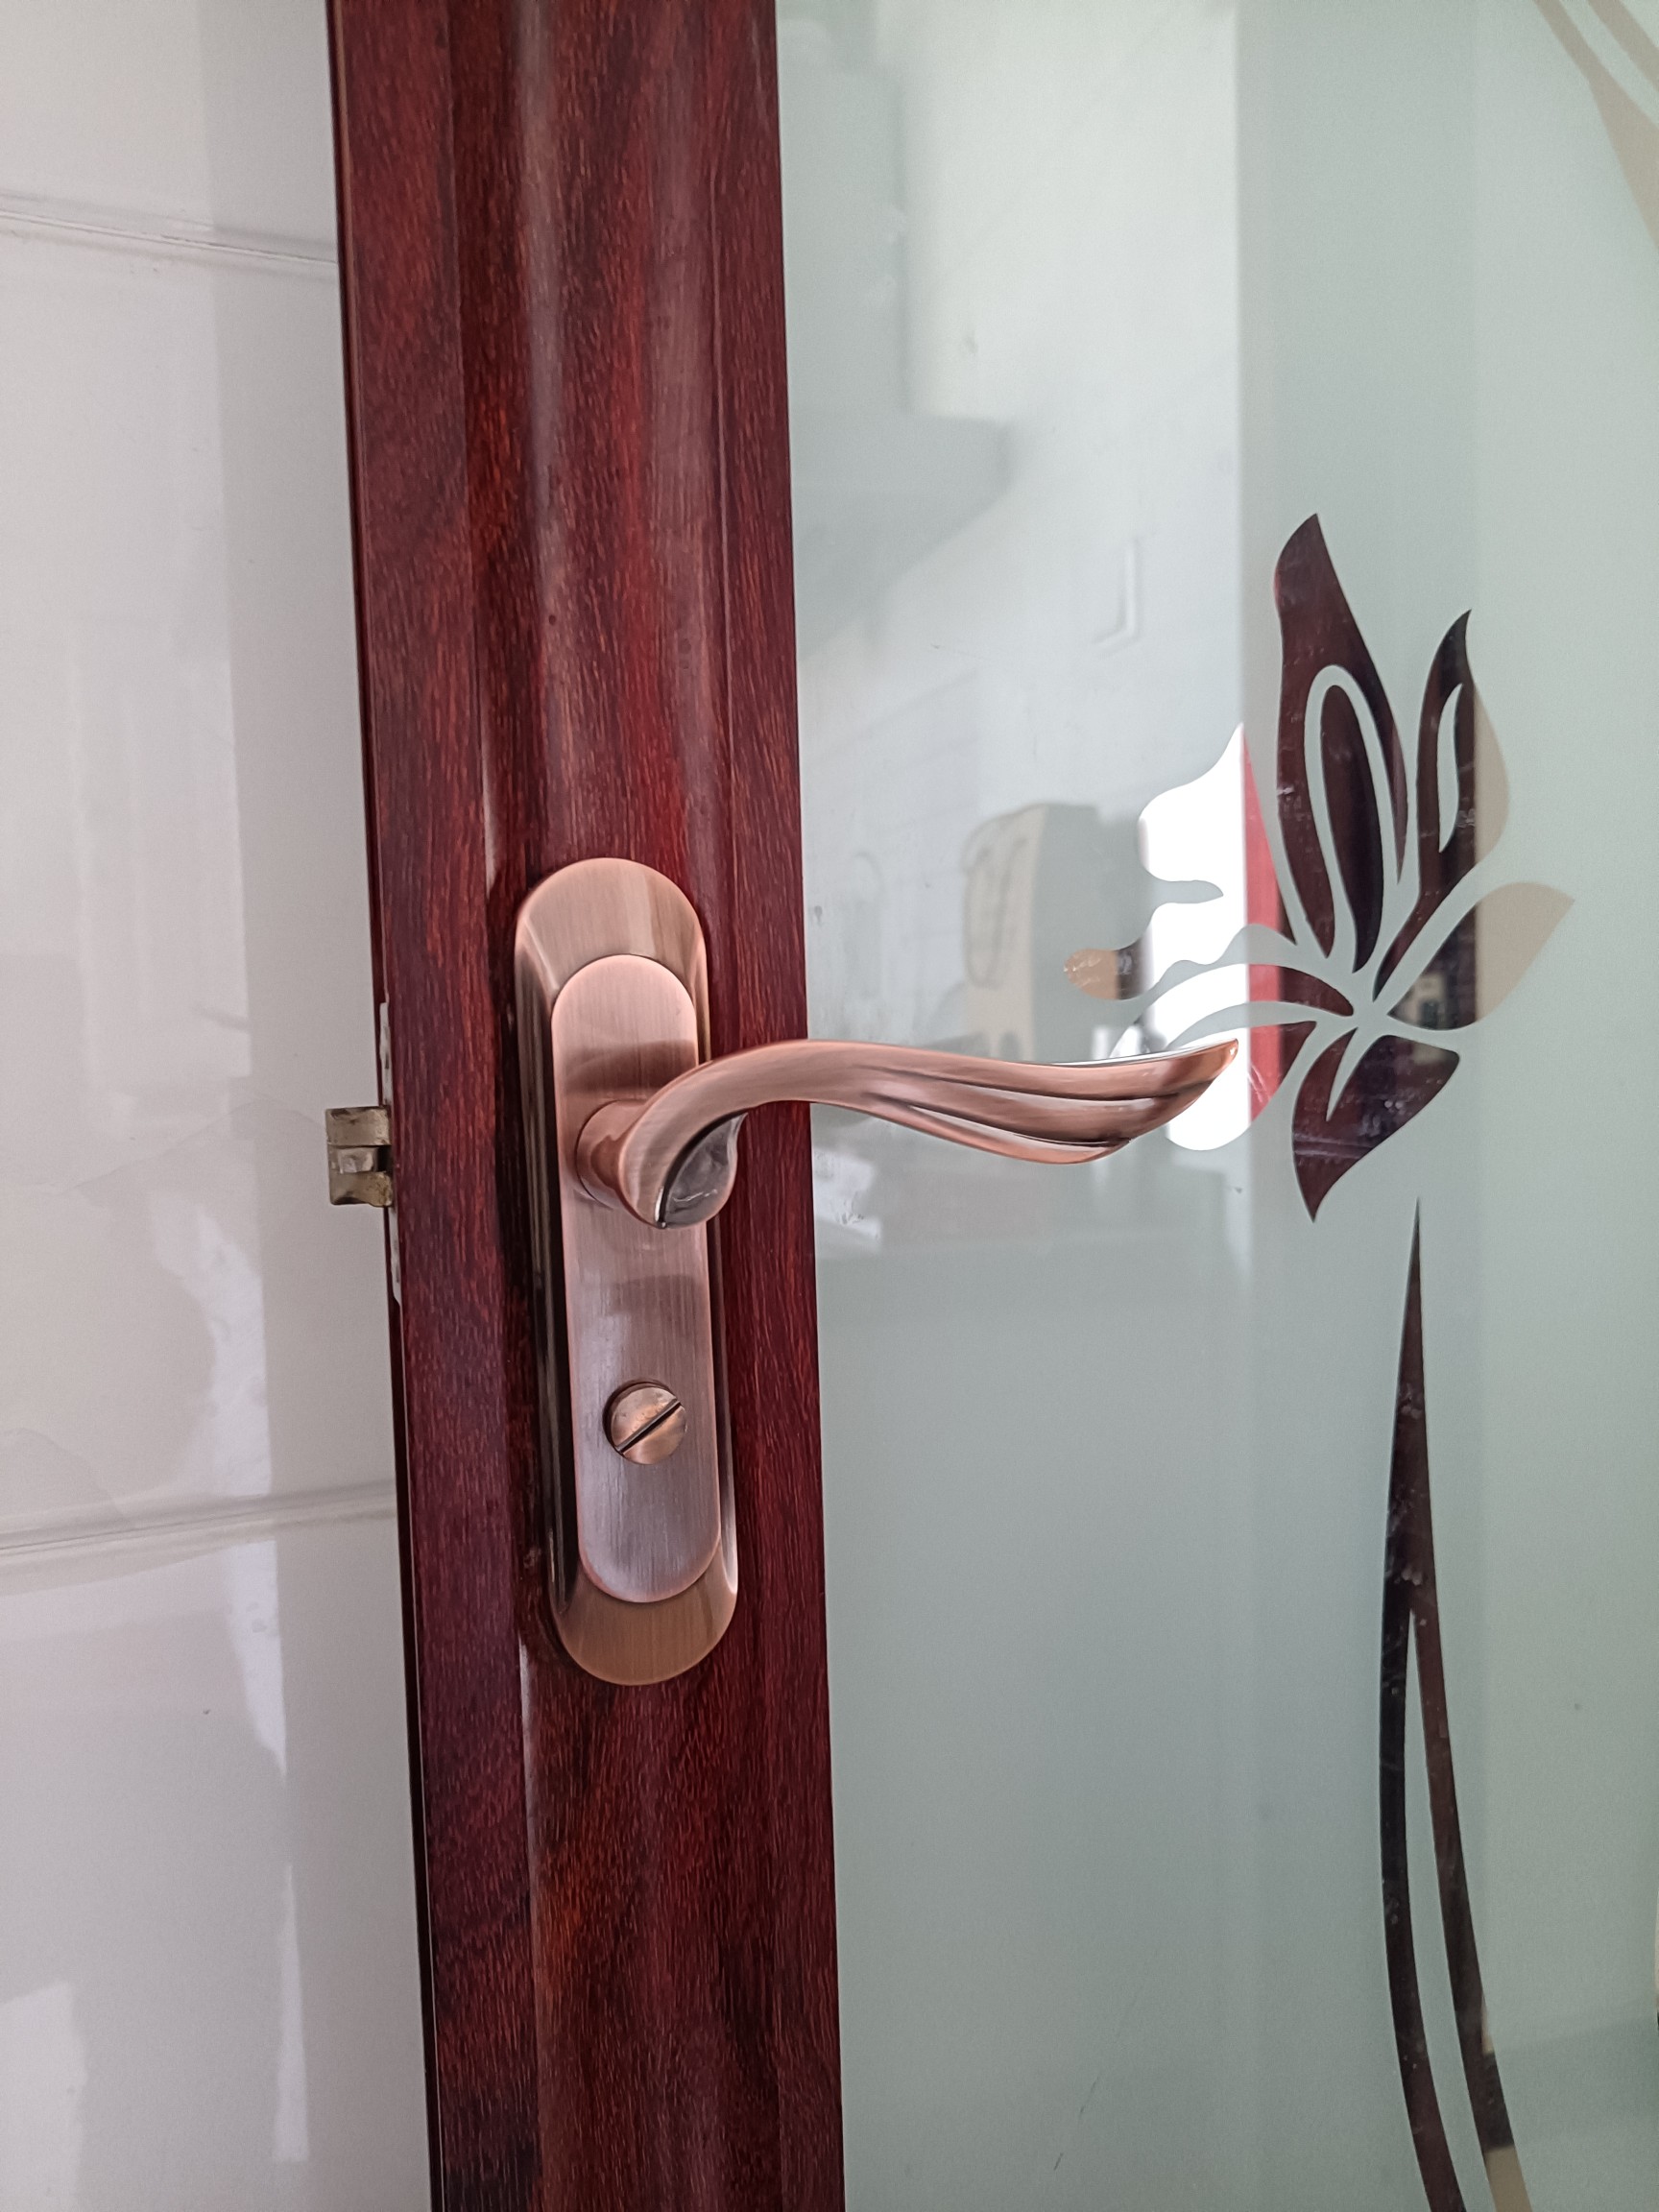 浴室卫浴卫生间古铜色凹弧面通用锁洗手间型门锁厨房执手厕所锁具